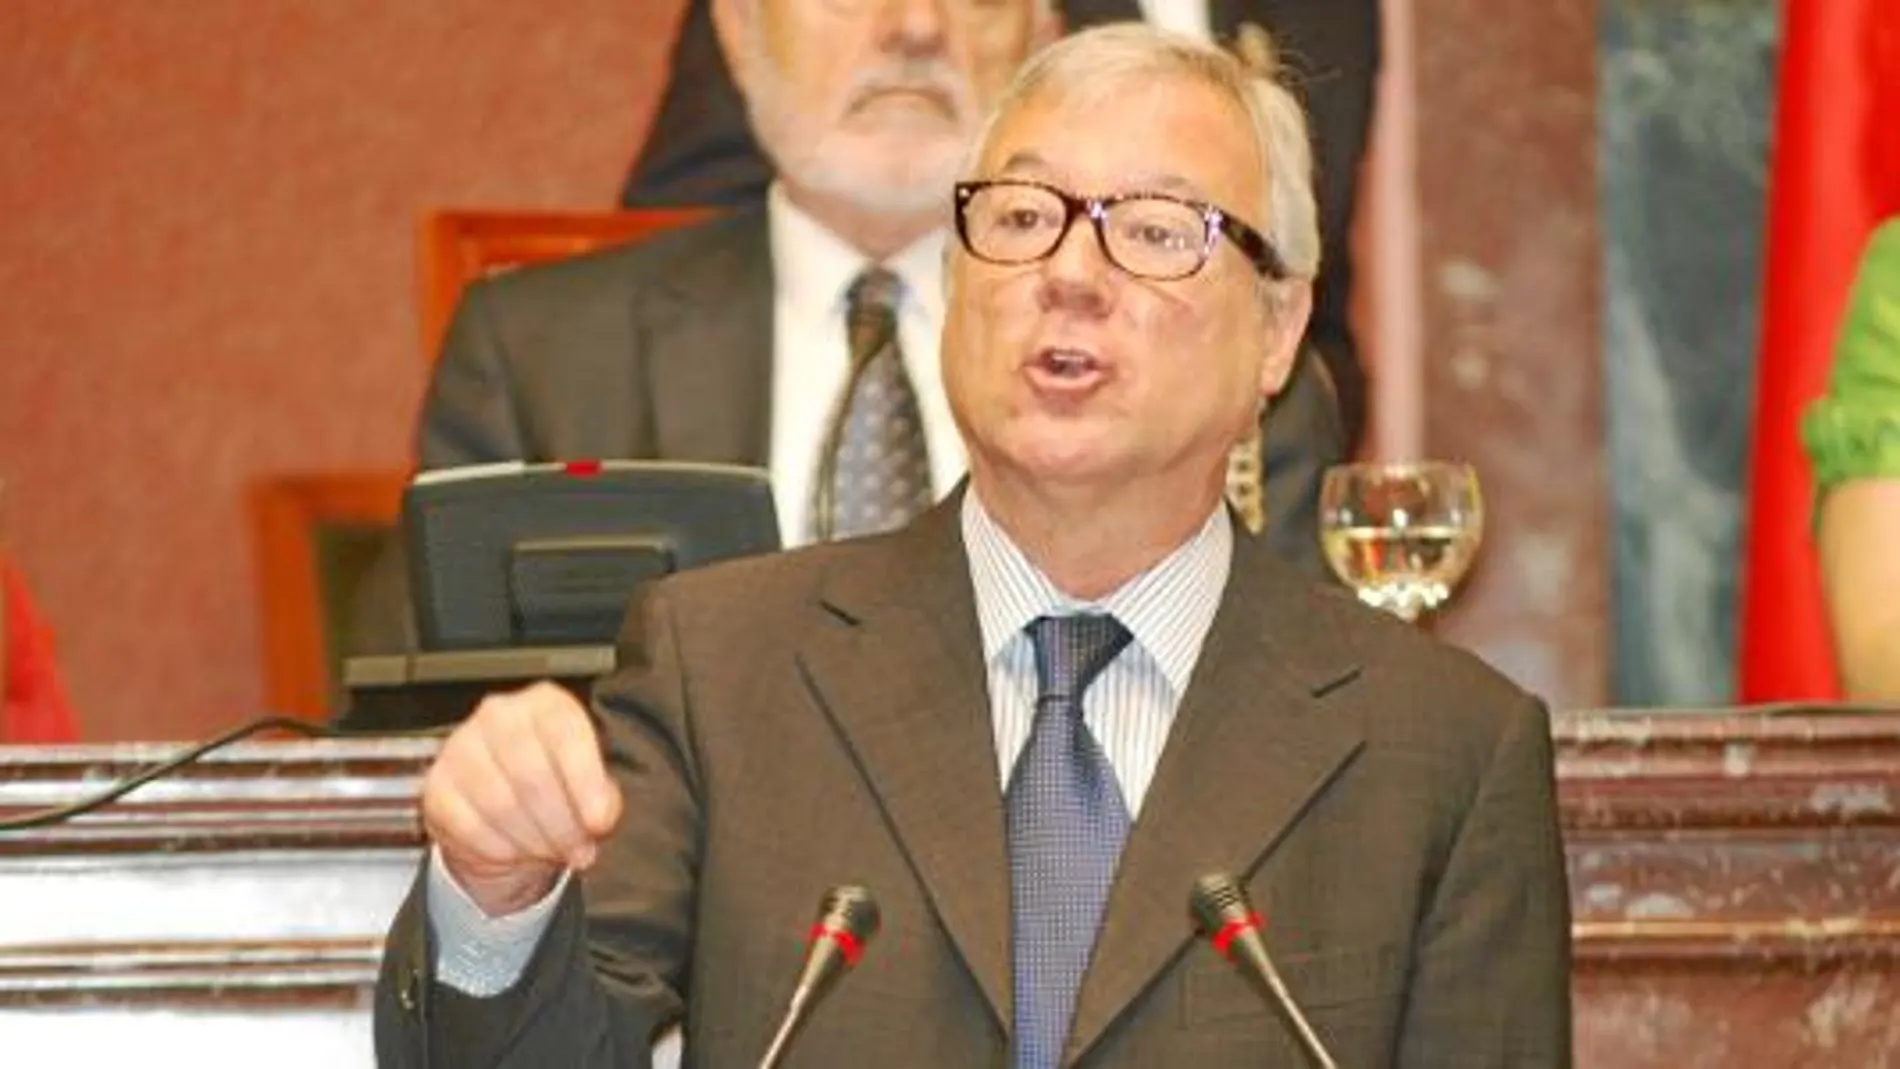 El presidente Valcárcel critica al líder de la oposición «la demagogia y la falta de rigor» de los datos aportados sobre el paro en la autonomía murciana